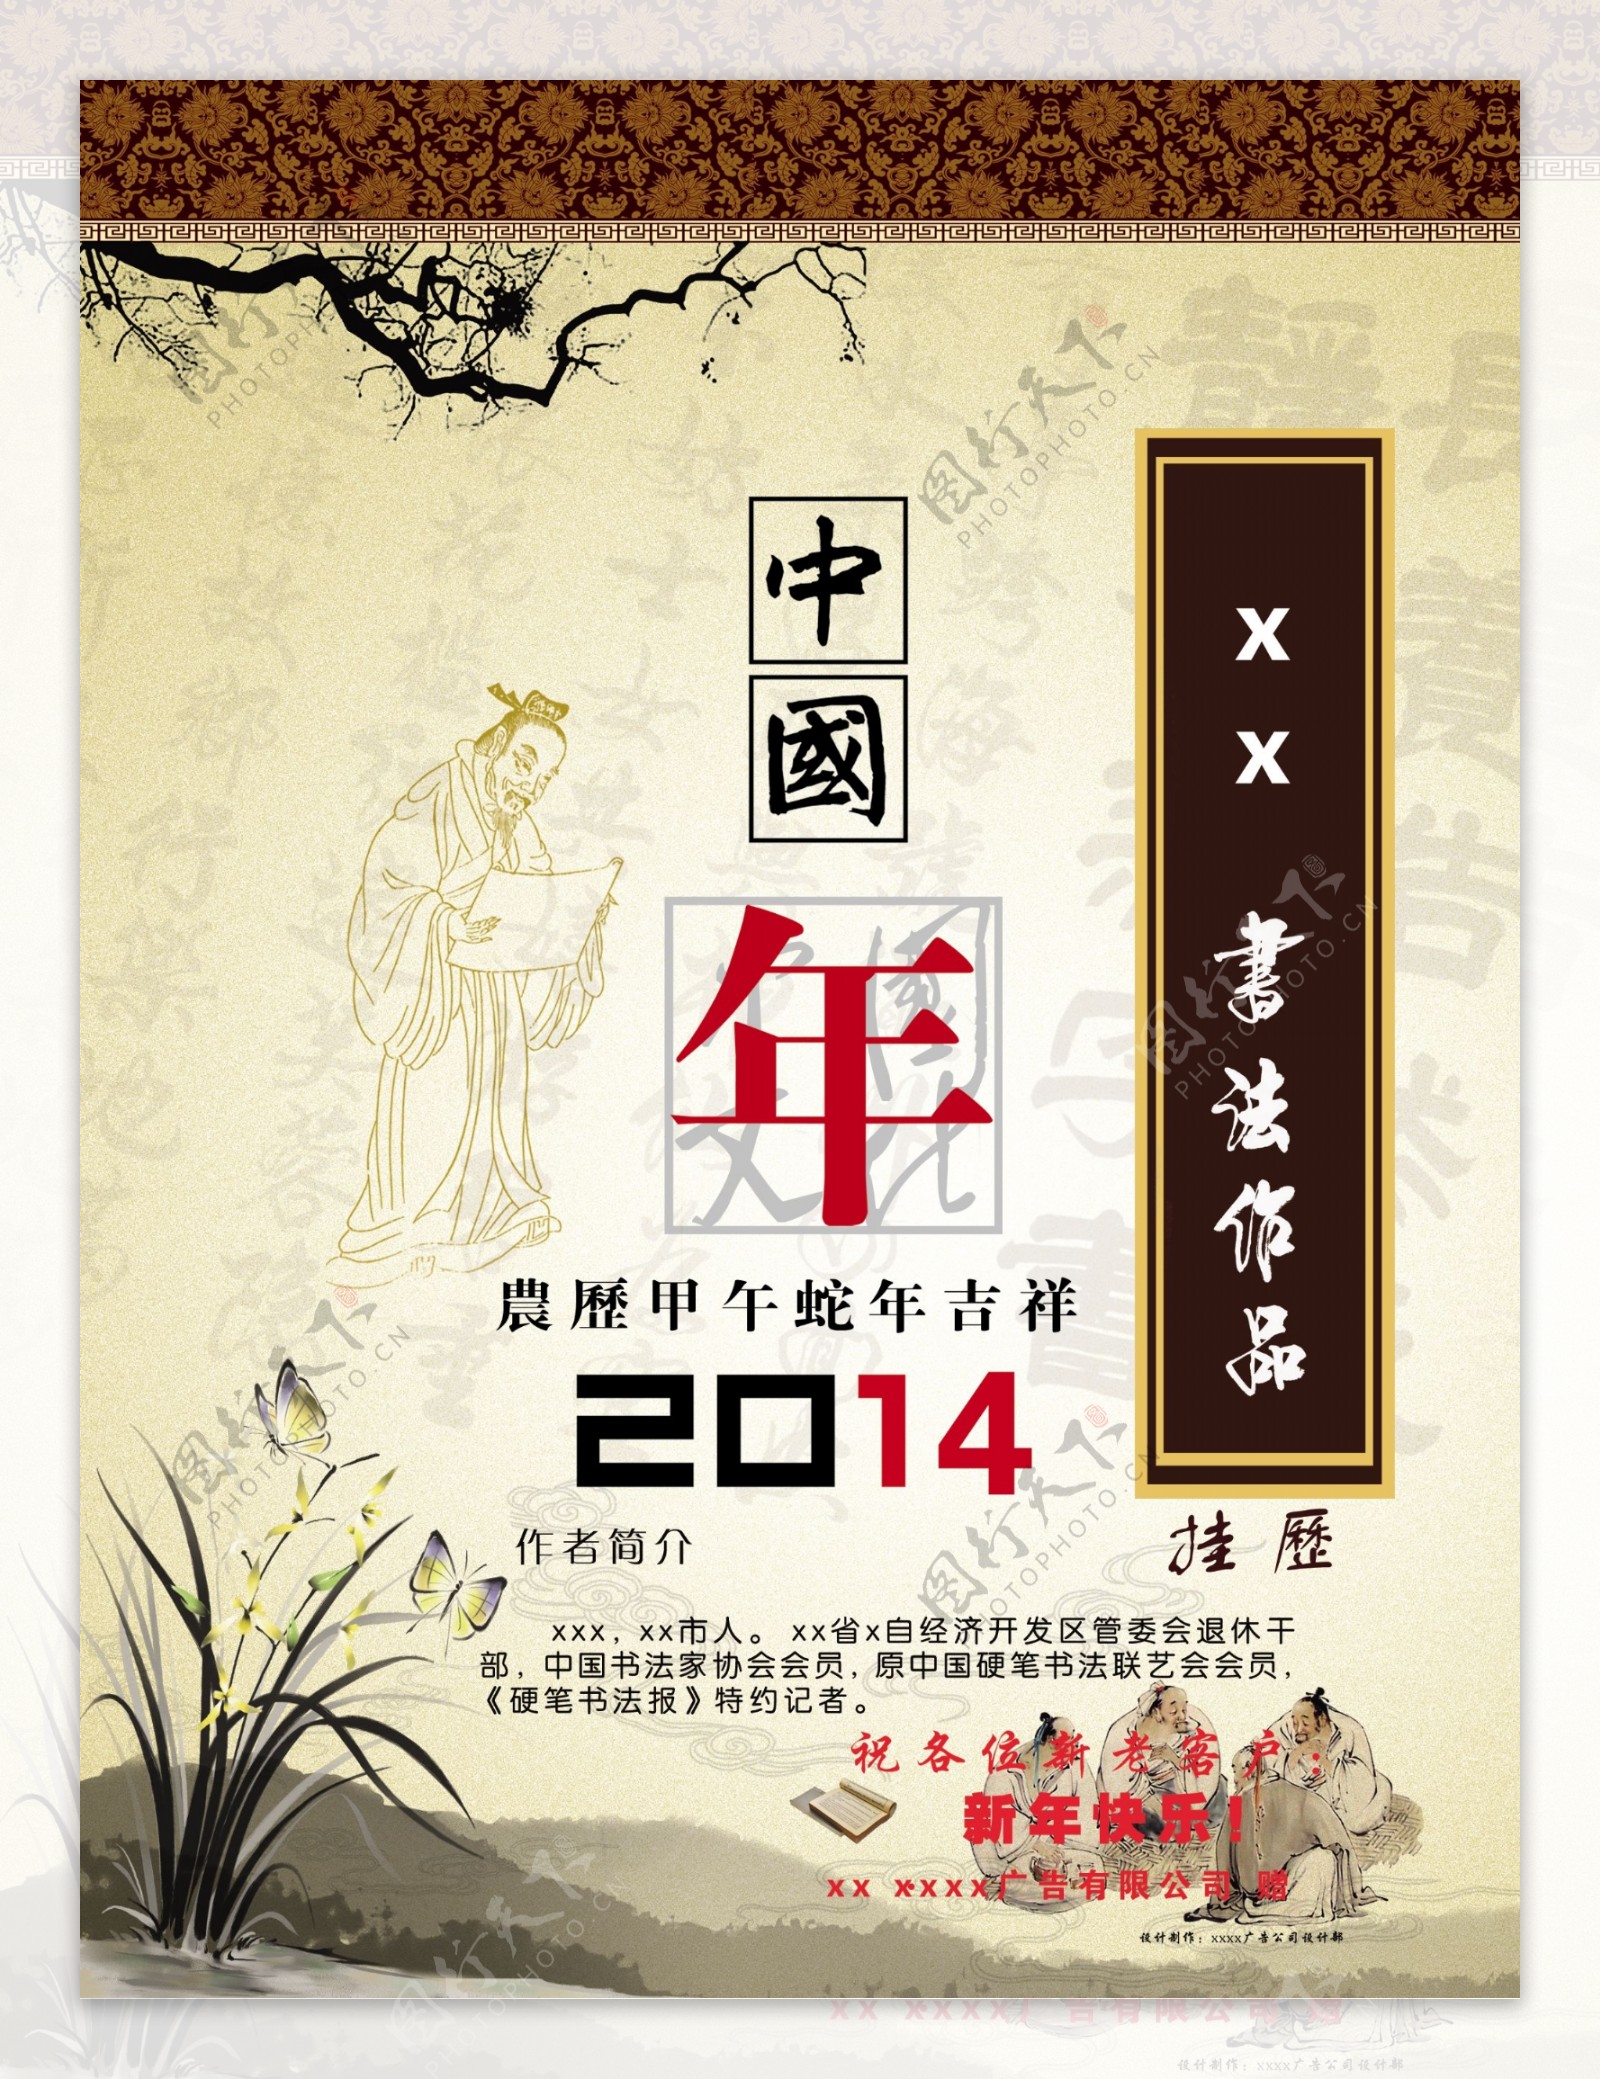 中国年日历封面图片